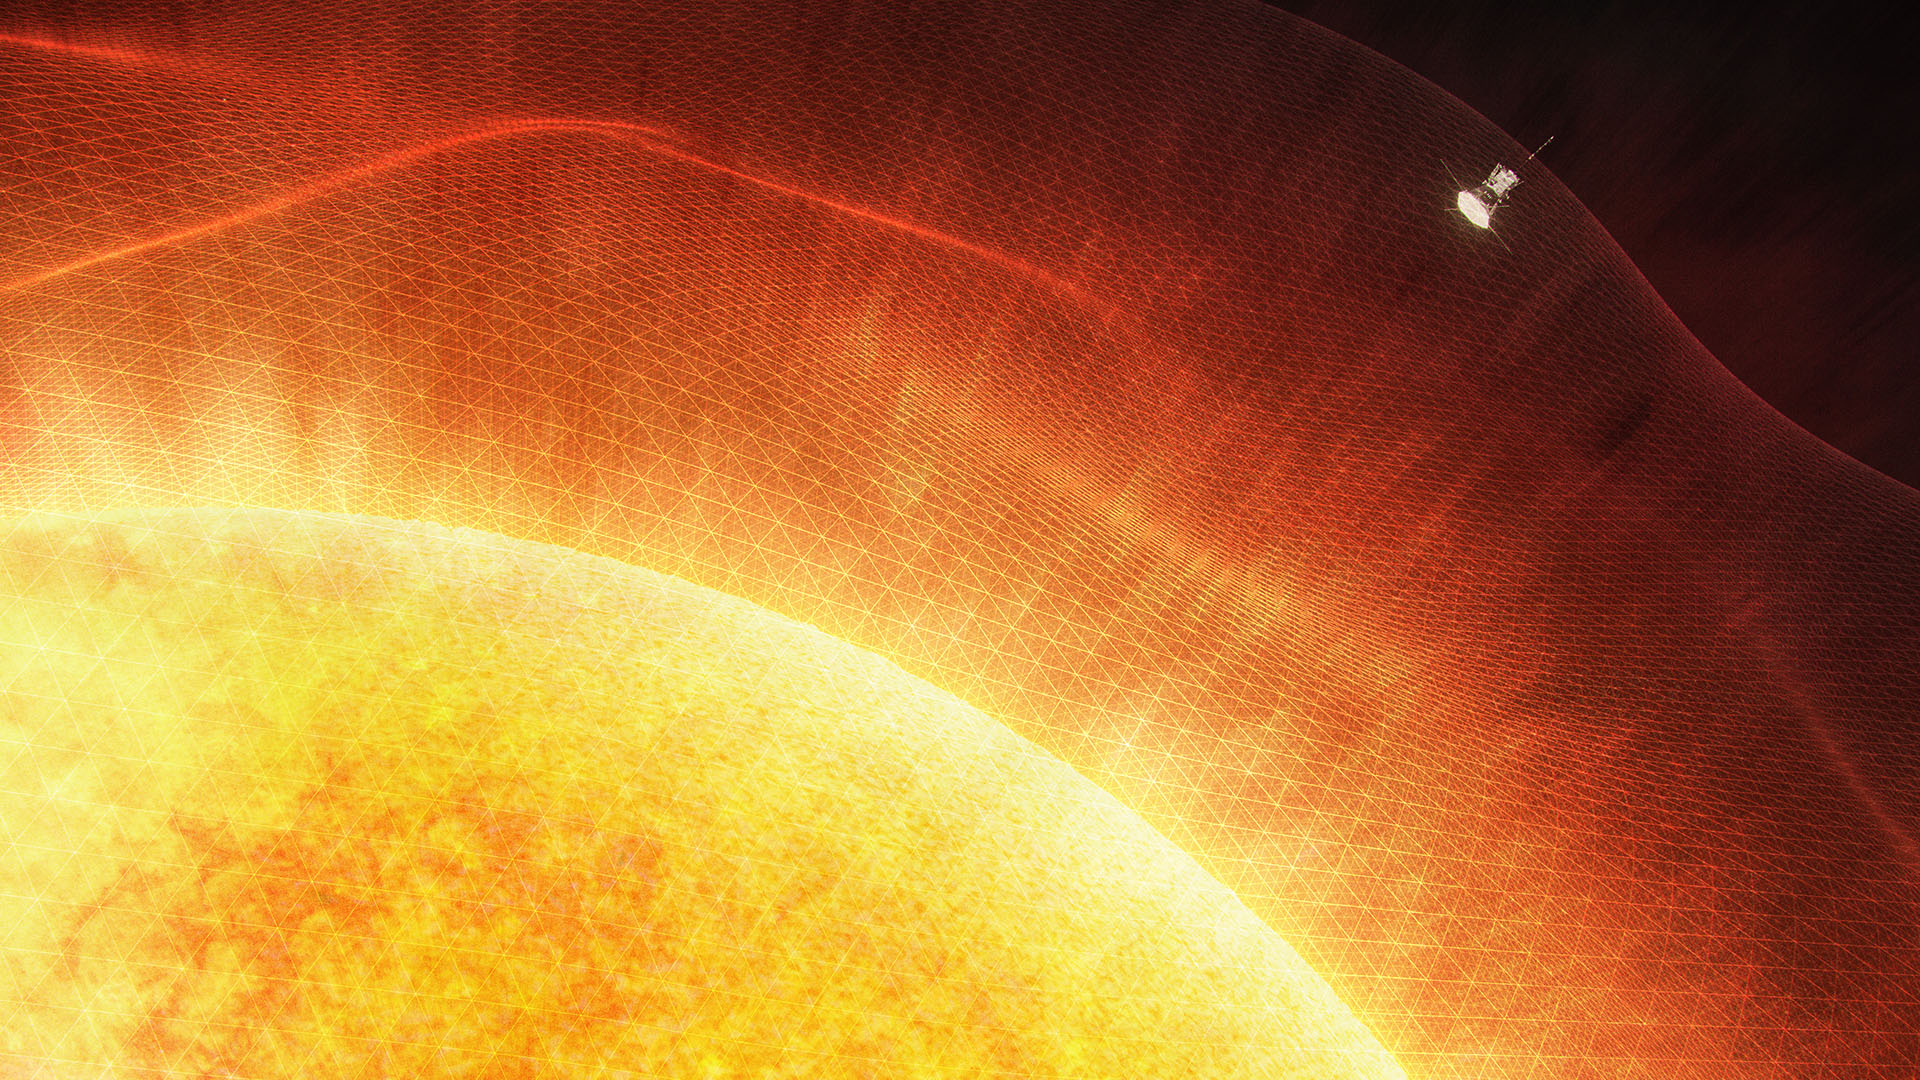 Солнечная атмосфера корона. Паркер Солнечный зонд снимки солнца. Строение атмосферы солнца Фотосфера хромосфера Солнечная корона. Зонд Паркер. Солнце НАСА.